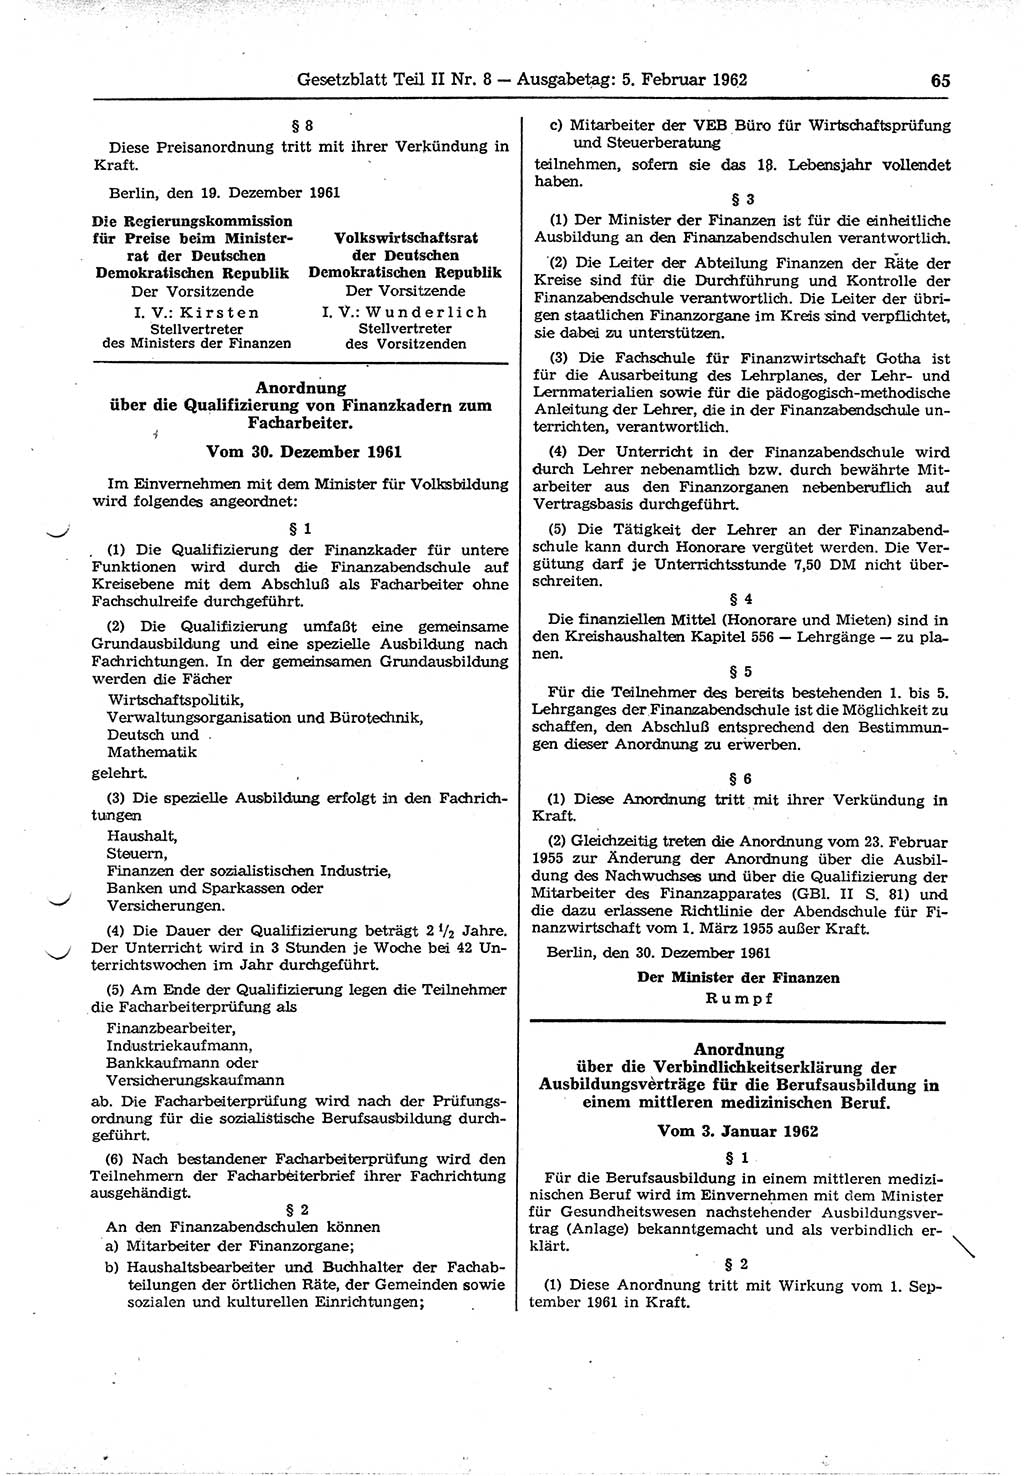 Gesetzblatt (GBl.) der Deutschen Demokratischen Republik (DDR) Teil ⅠⅠ 1962, Seite 65 (GBl. DDR ⅠⅠ 1962, S. 65)